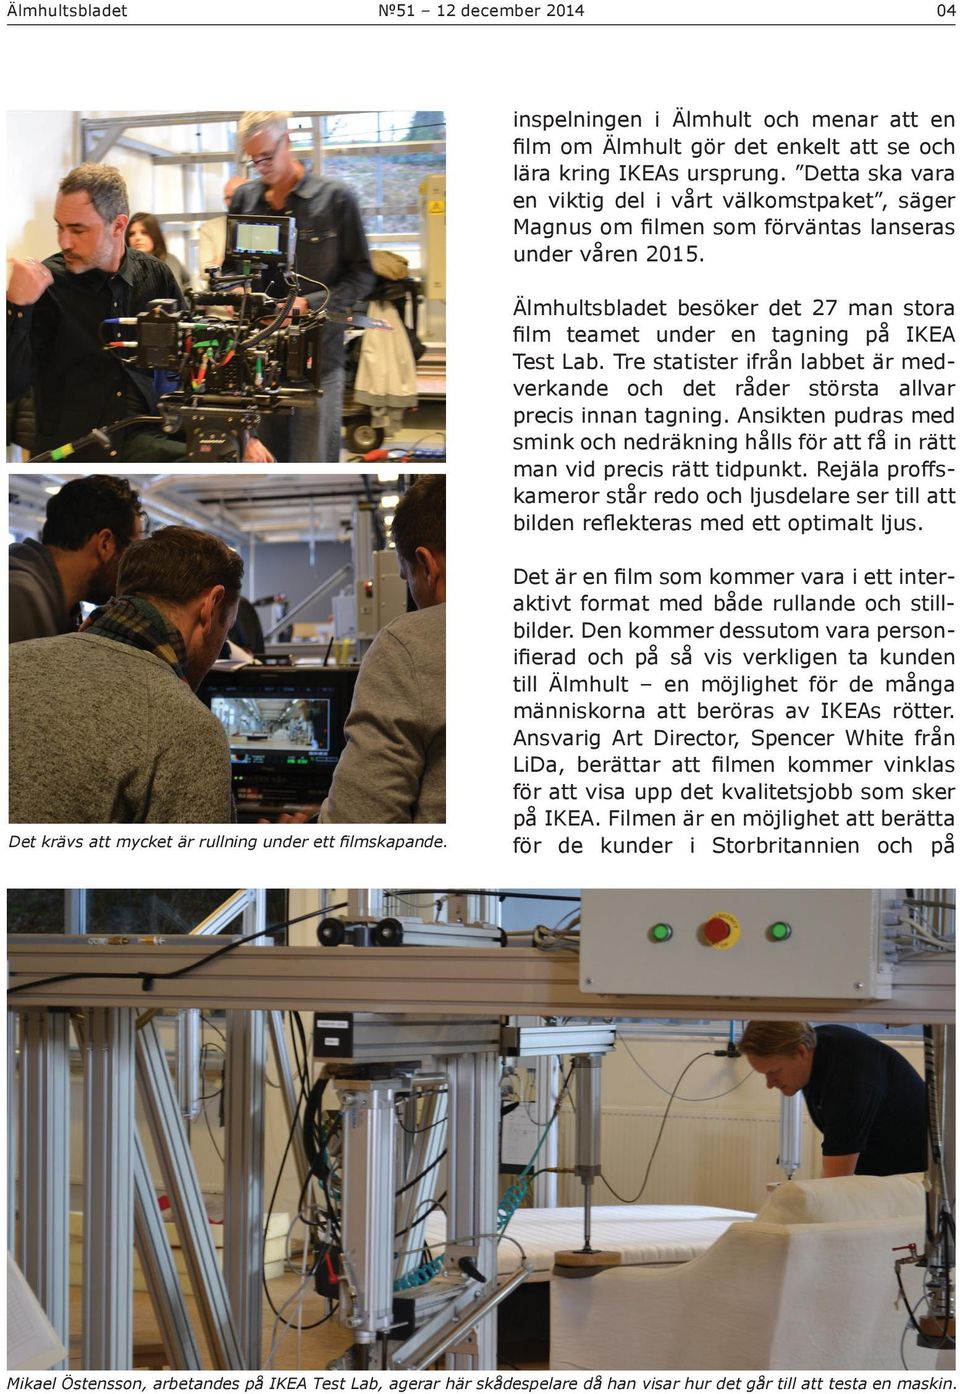 Älmhultsbladet besöker det 27 man stora film teamet under en tagning på IKEA Test Lab. Tre statister ifrån labbet är medverkande och det råder största allvar precis innan tagning.